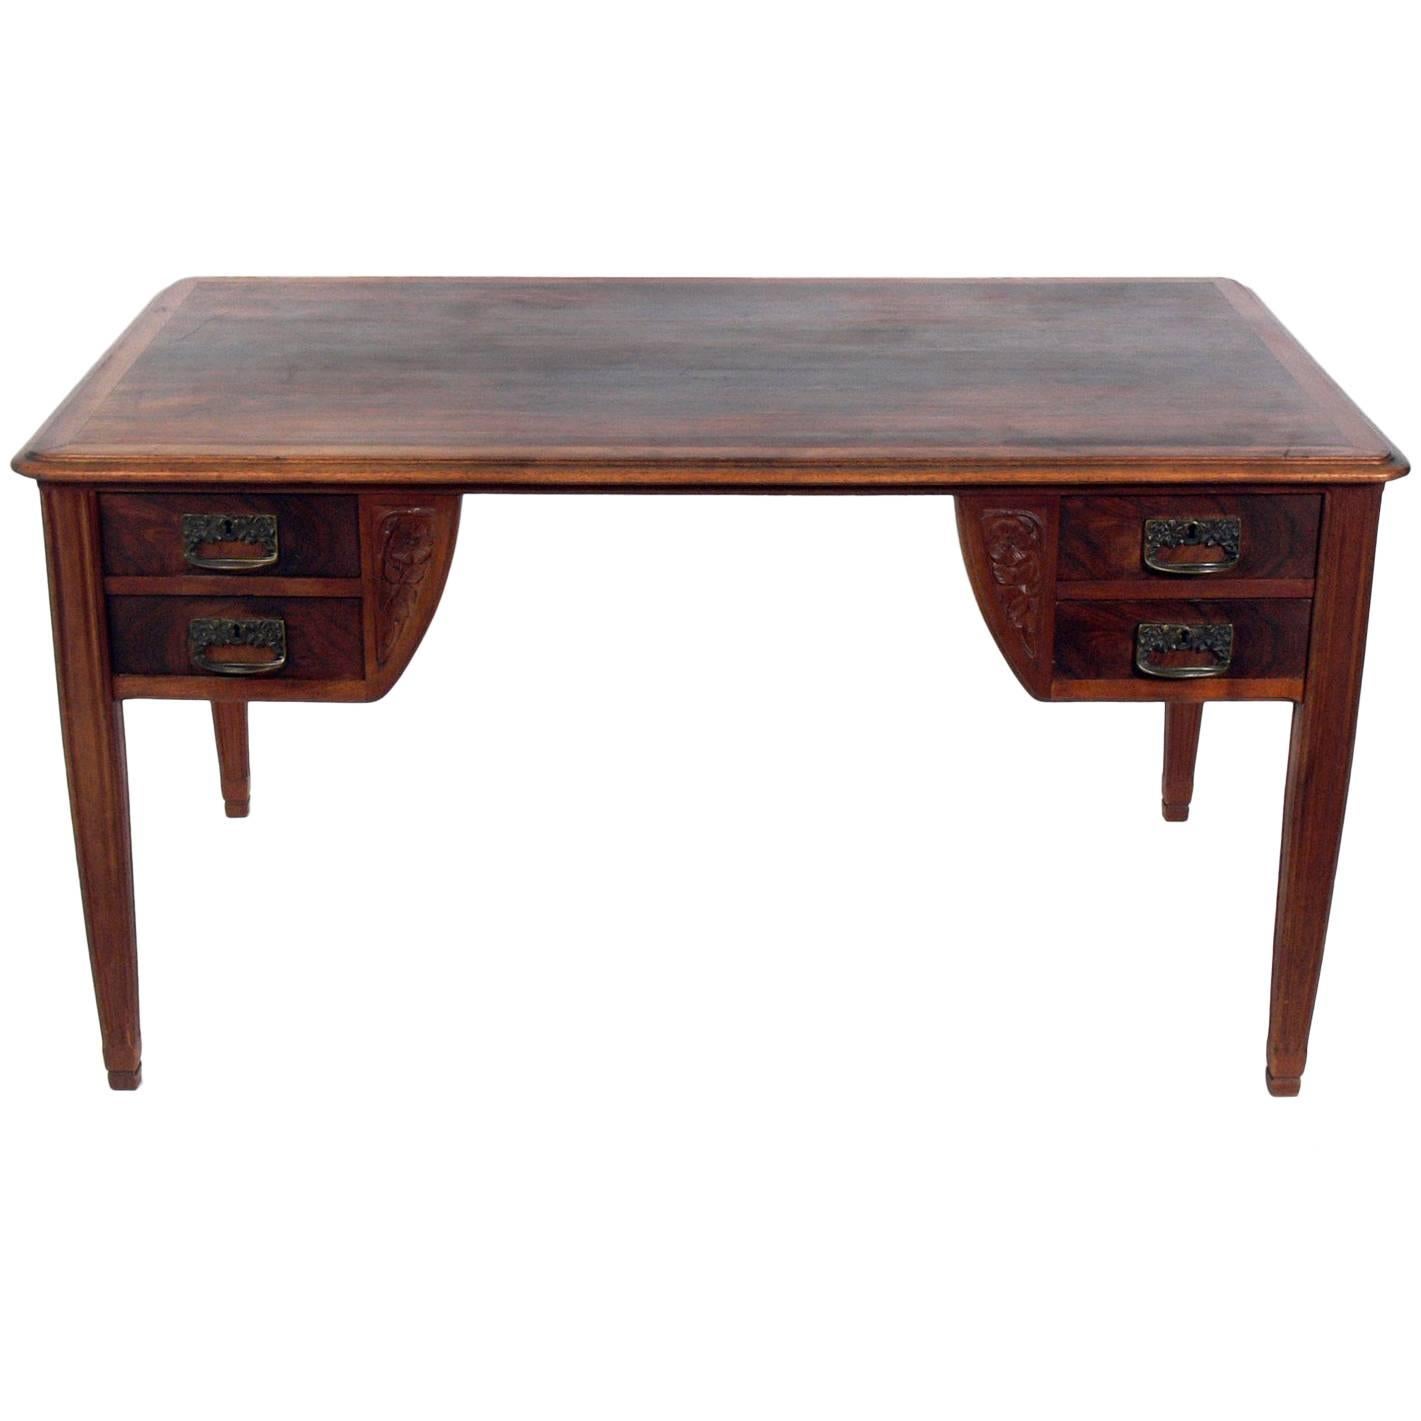 French Art Nouveau Rosewood Desk or Bureau Plat